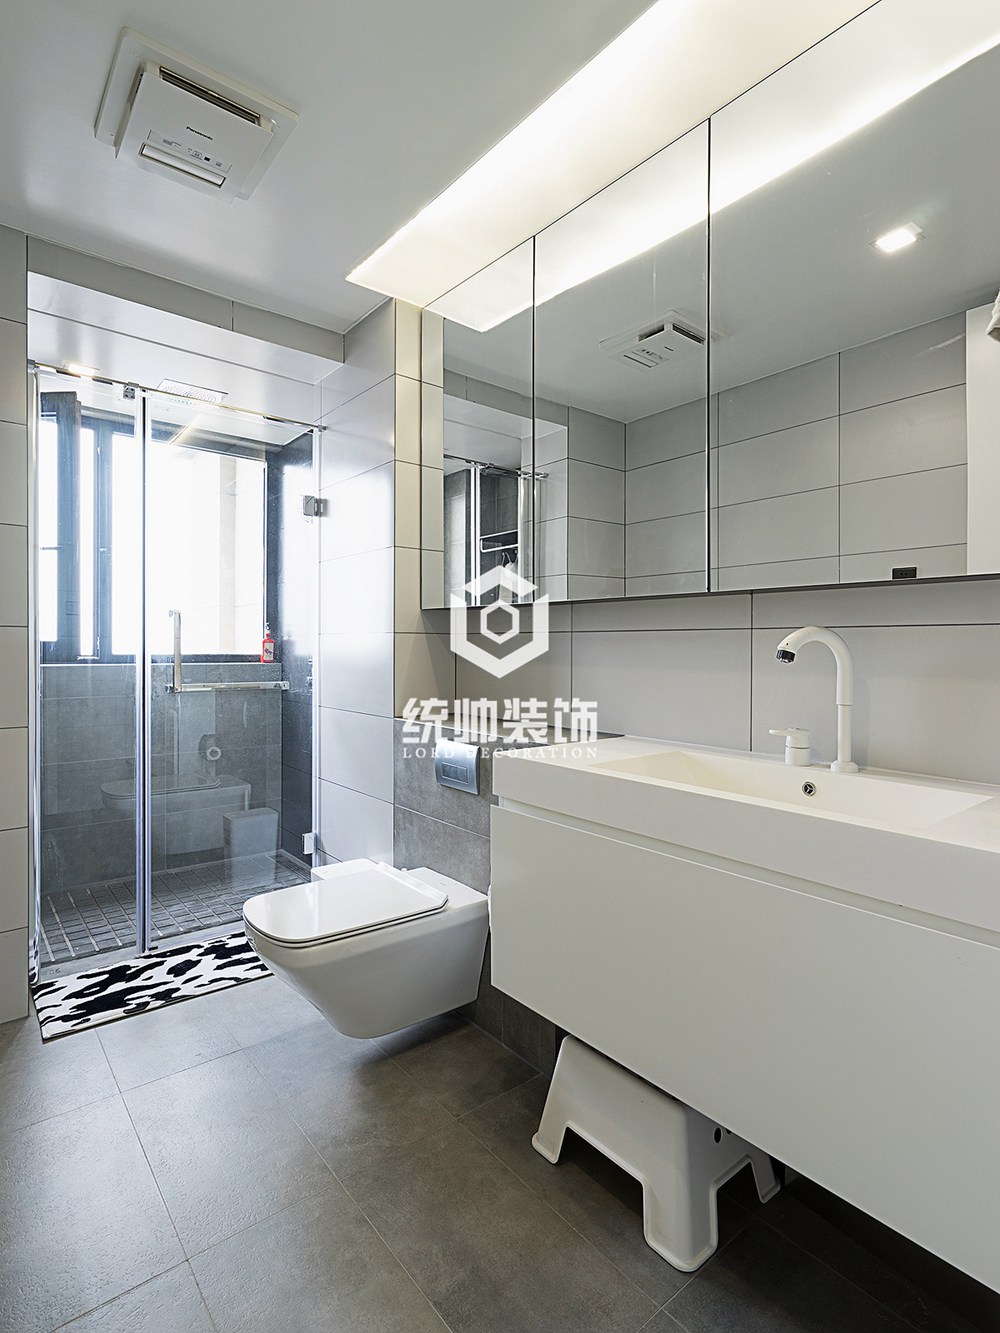 普陀区中海豪庭135平方现代简约风格3室2厅卫生间装修效果图